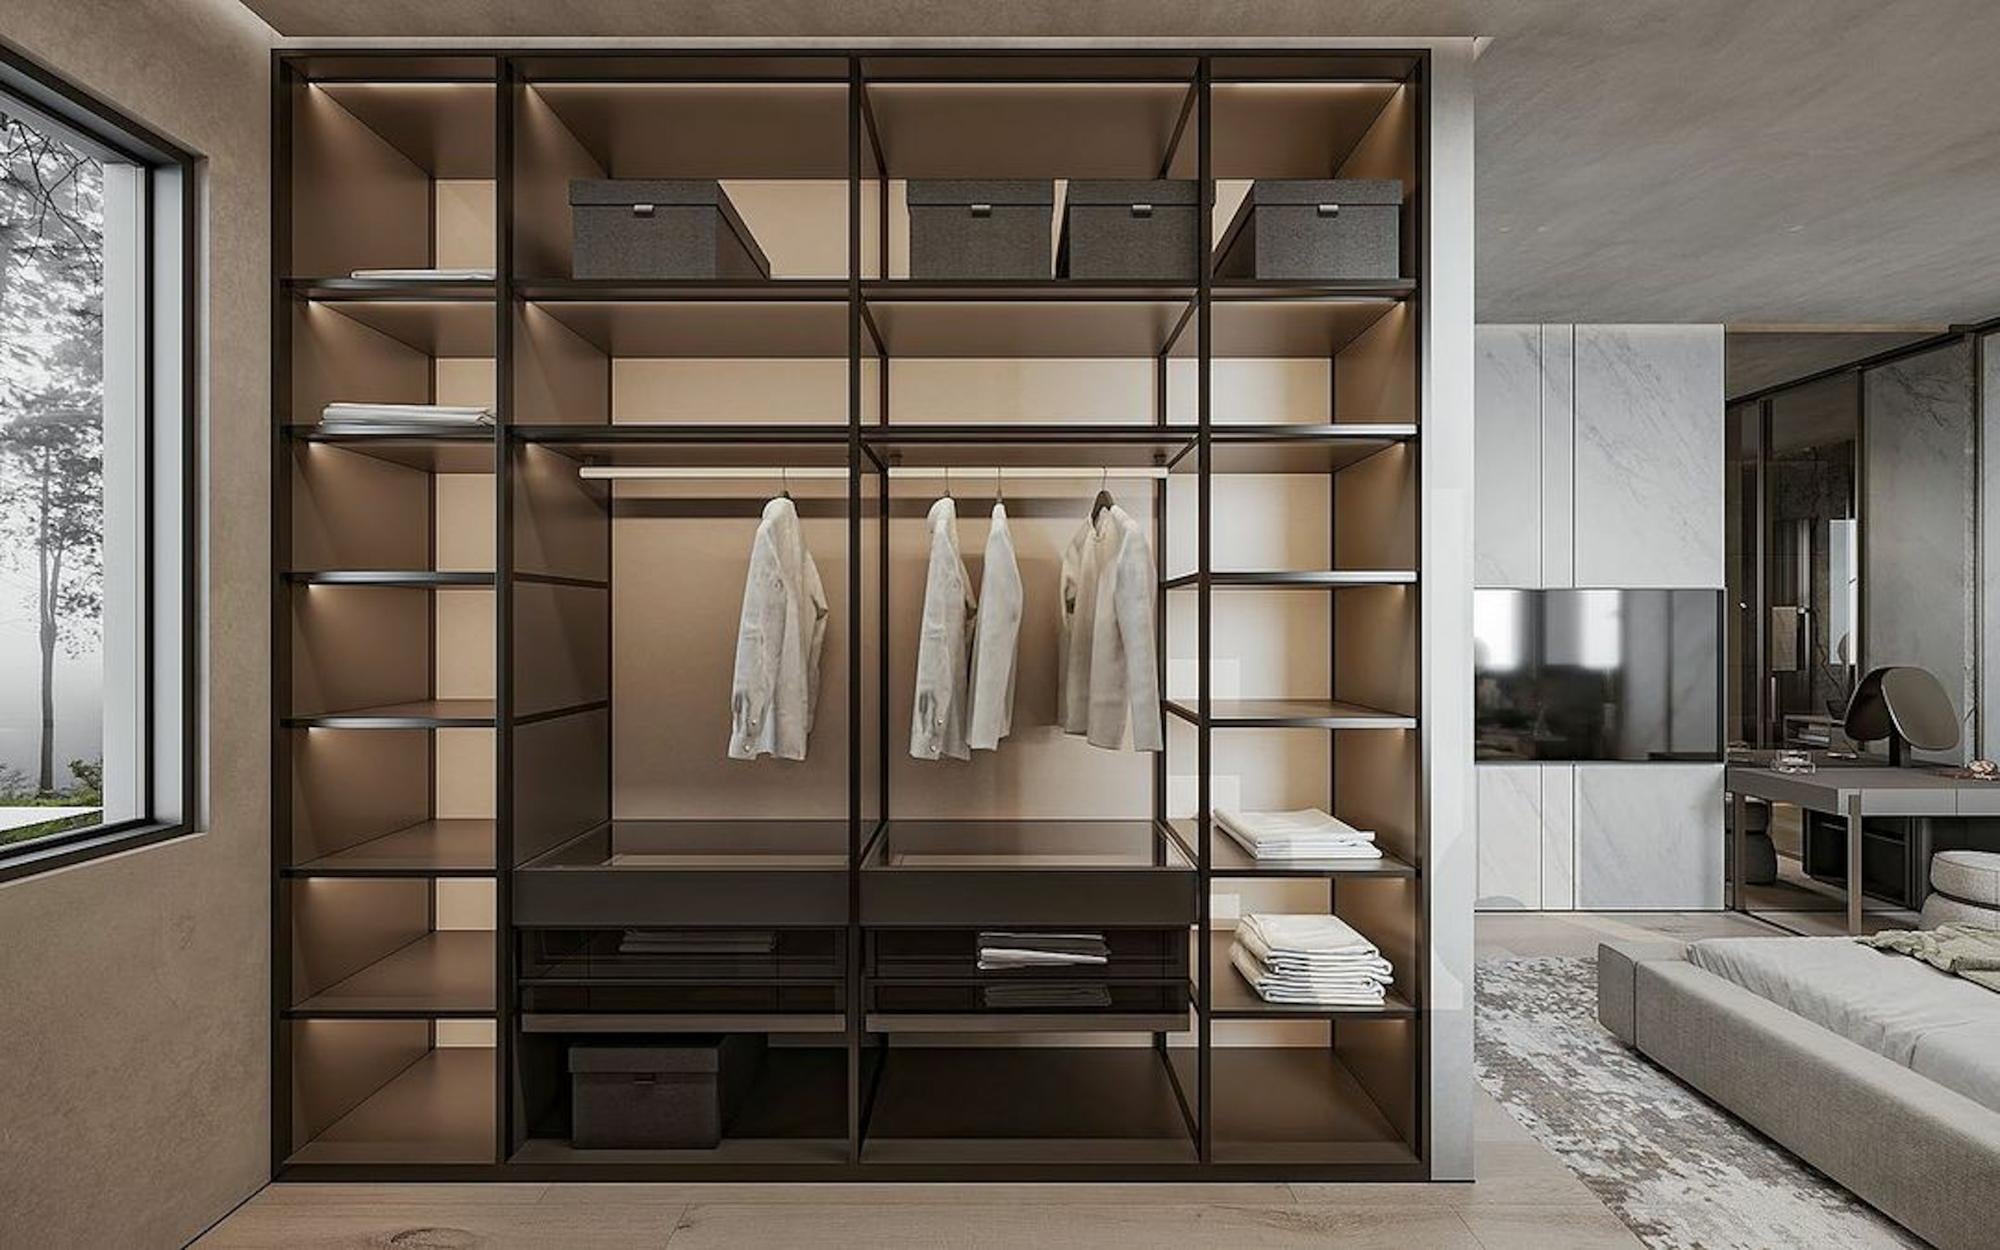 Garderoba w lofcie - klucz do stylowej organizacji